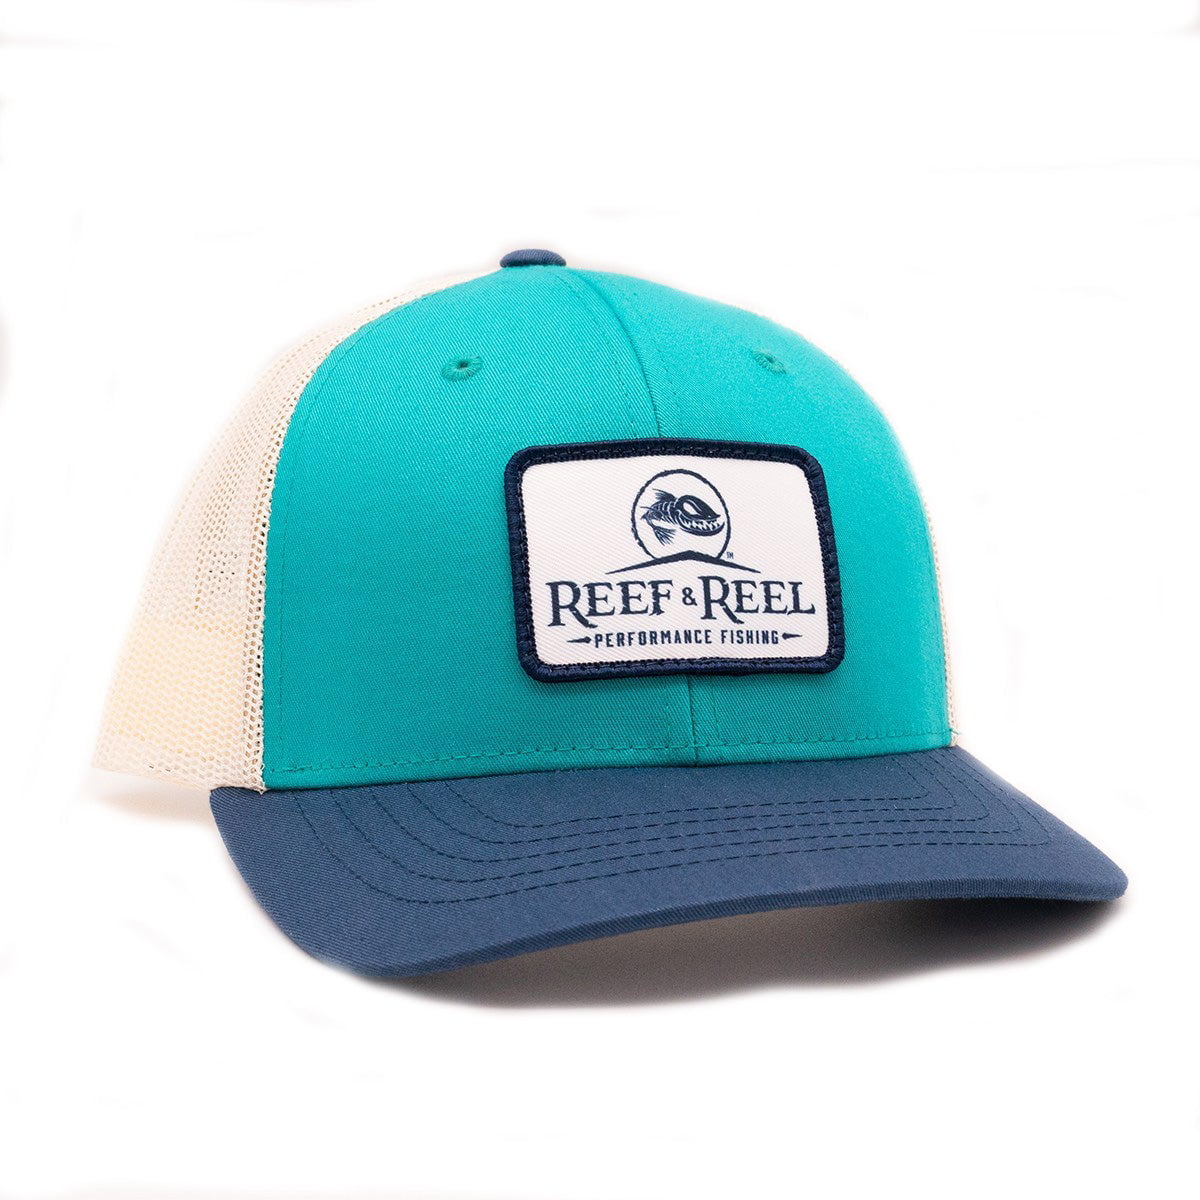 Buy Reef & Reel Youth Trucker Hat Online Palestine